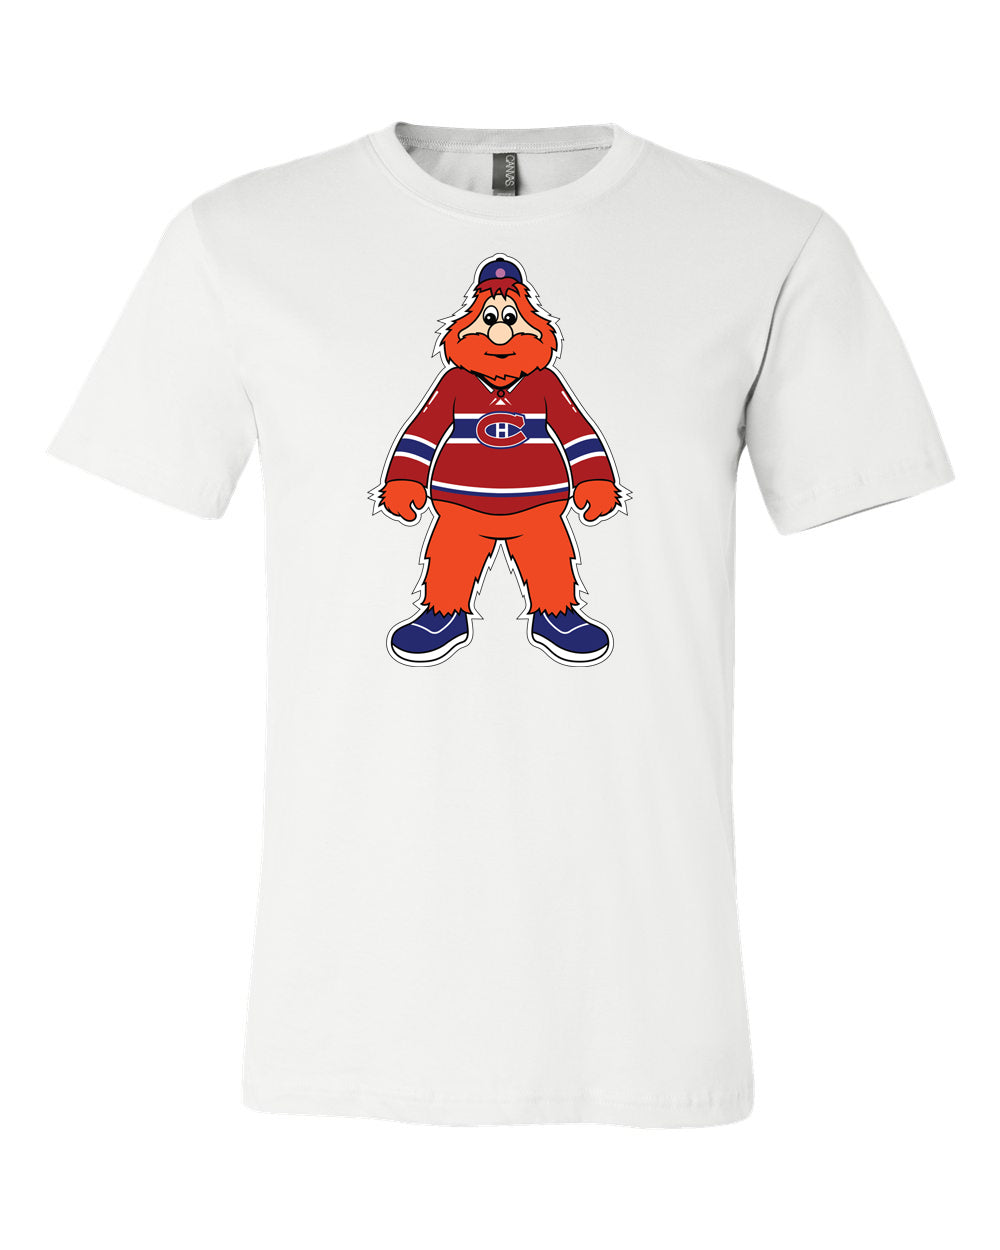 Montreal Canadiens Mascot Shirt